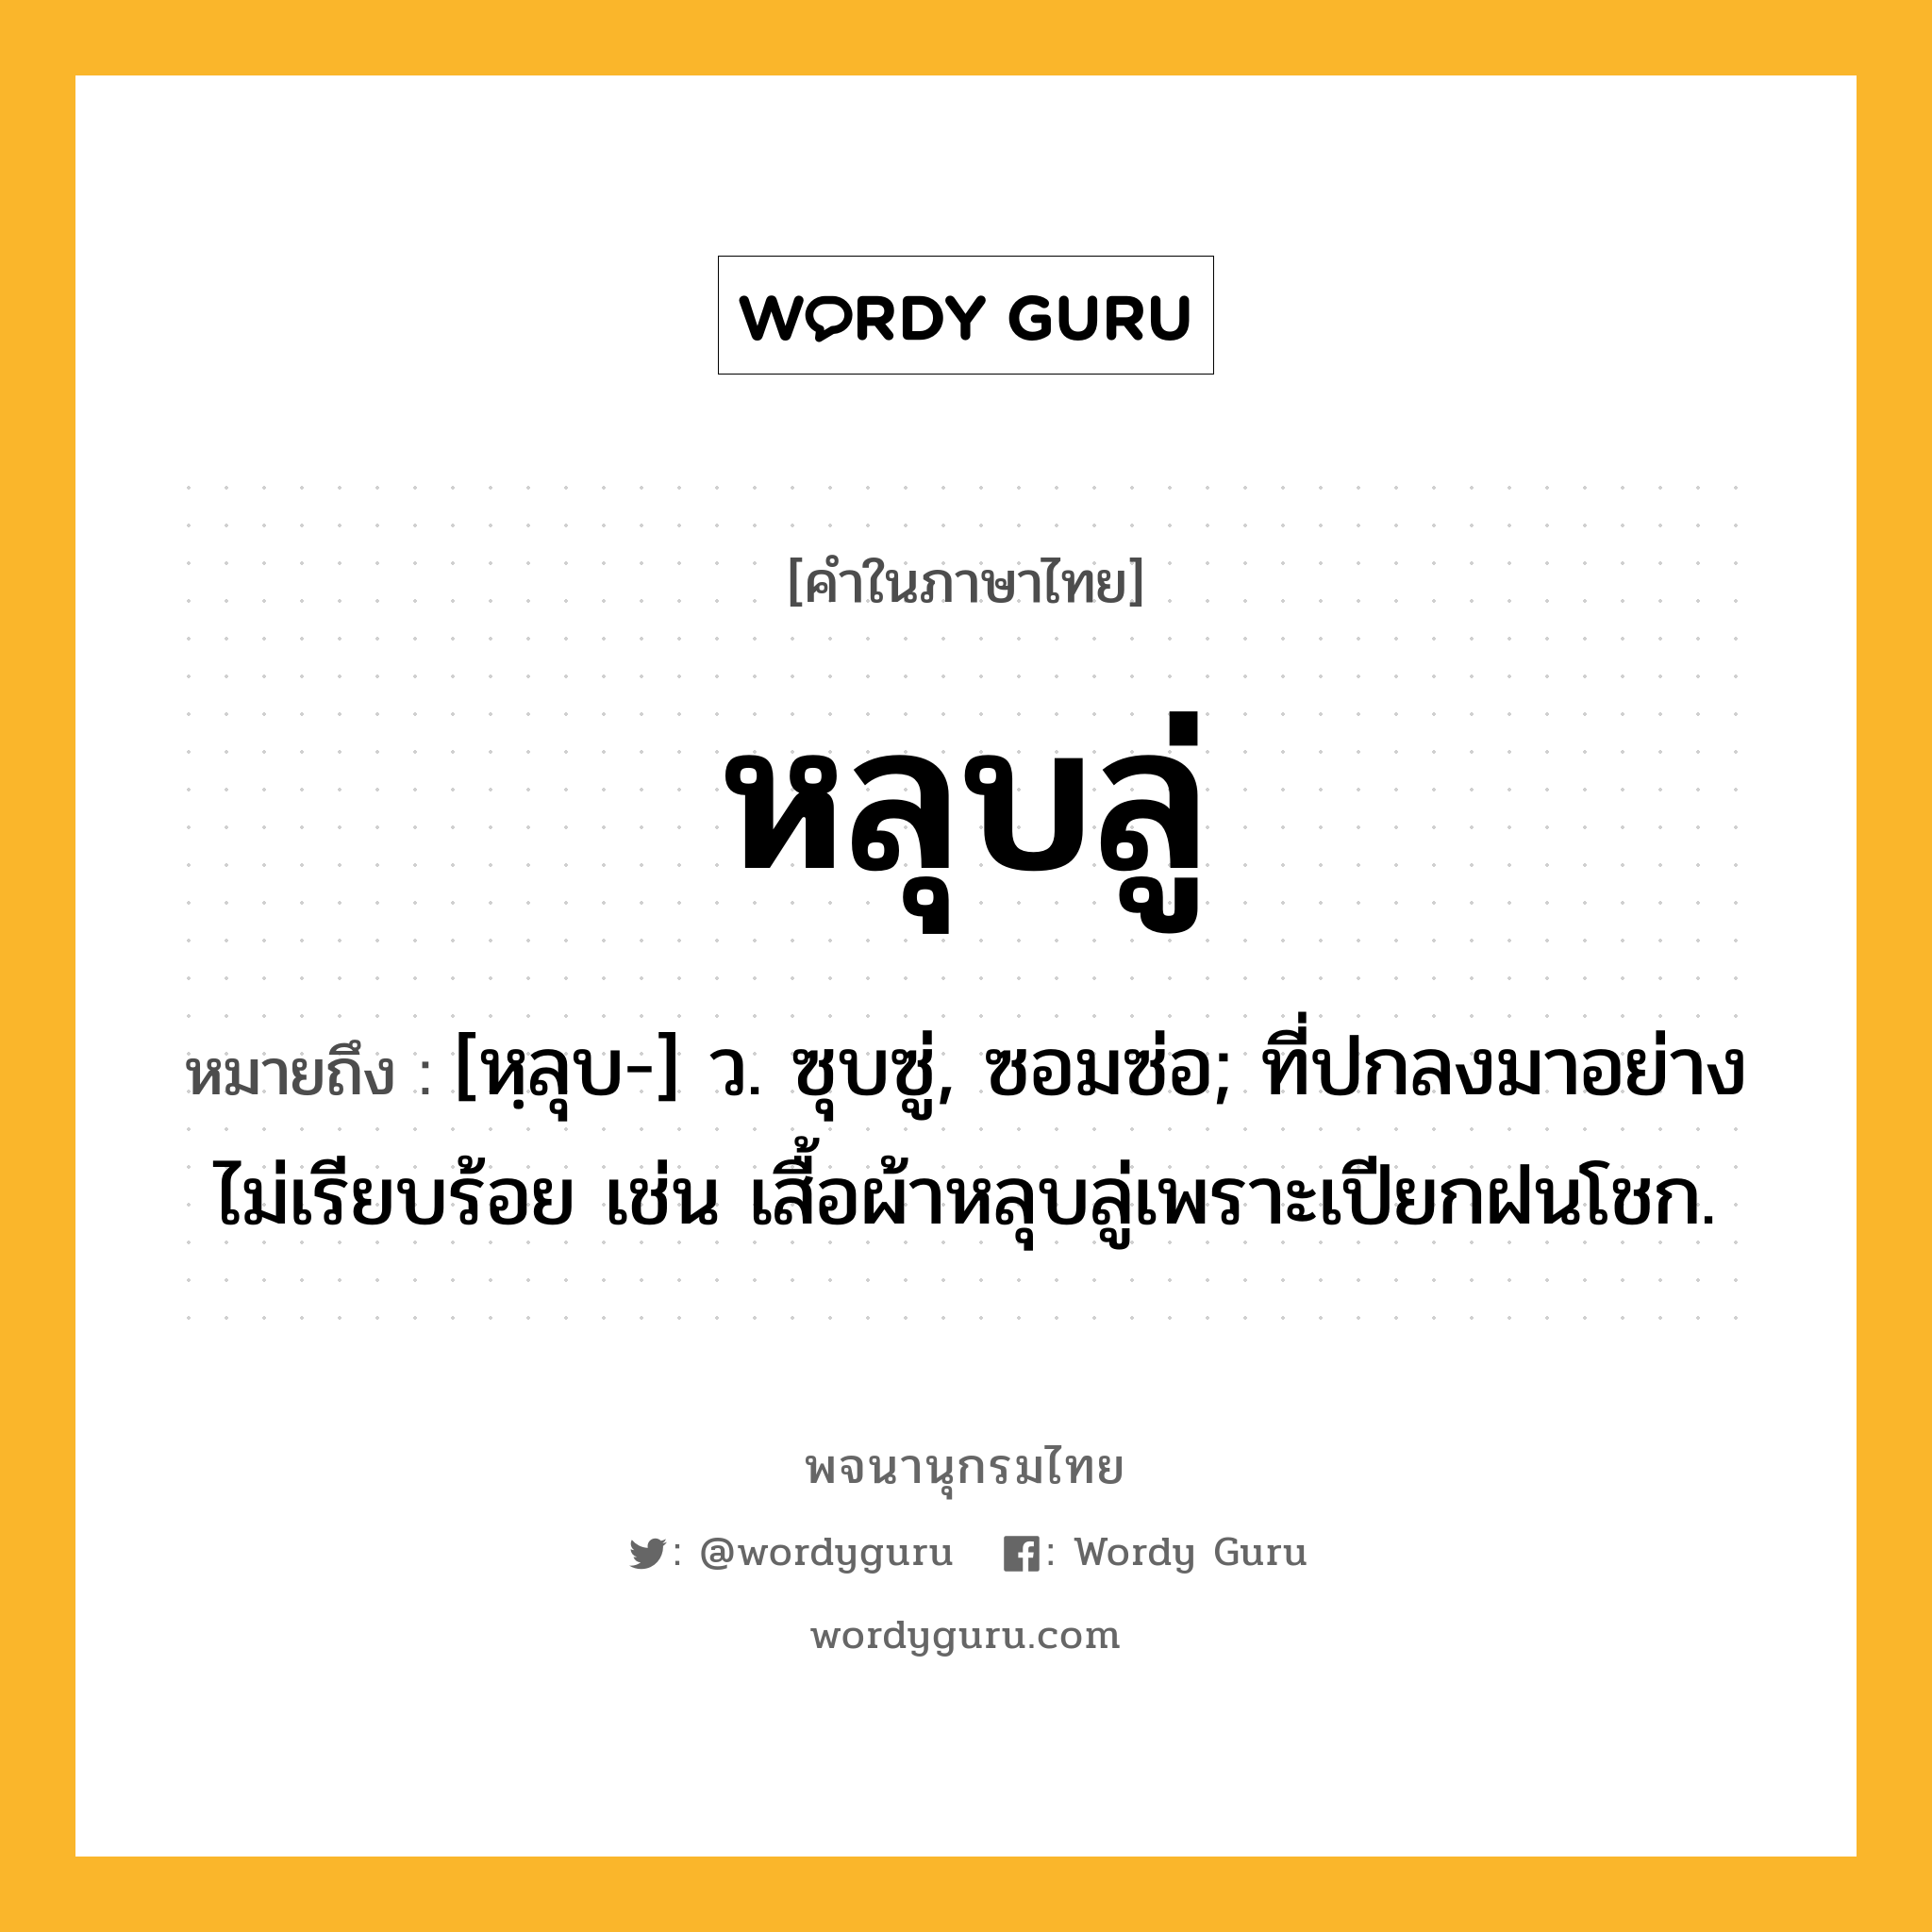 หลุบลู่ ความหมาย หมายถึงอะไร?, คำในภาษาไทย หลุบลู่ หมายถึง [หฺลุบ-] ว. ซุบซู่, ซอมซ่อ; ที่ปกลงมาอย่างไม่เรียบร้อย เช่น เสื้อผ้าหลุบลู่เพราะเปียกฝนโชก.